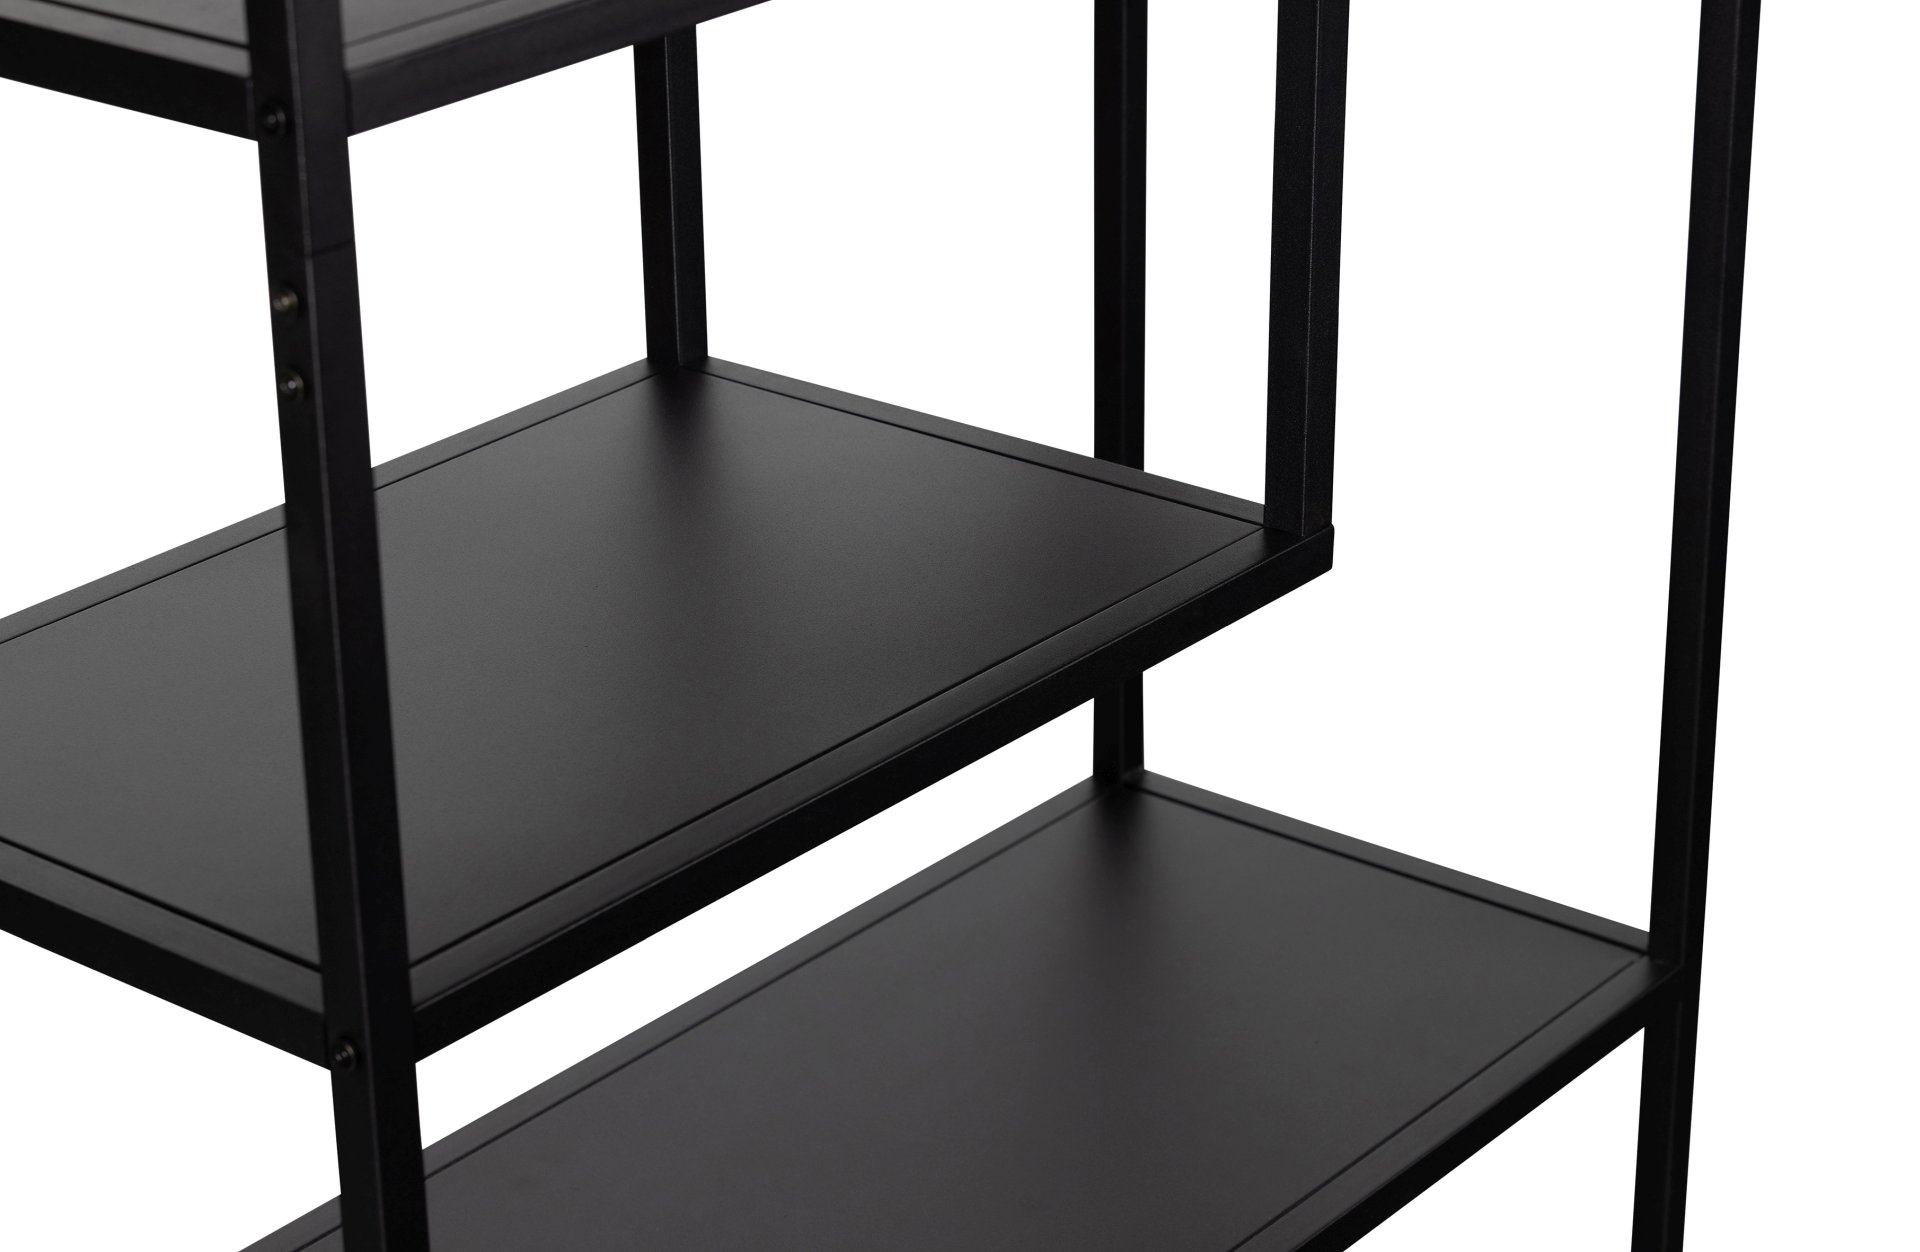 Das Regal Teun wurde aus Metall gefertigt und besitzt einen schwarzen Farbton. Es Überzeugt mit seinem industriellem Design. Das Regal verfügt über sechs Fächer.